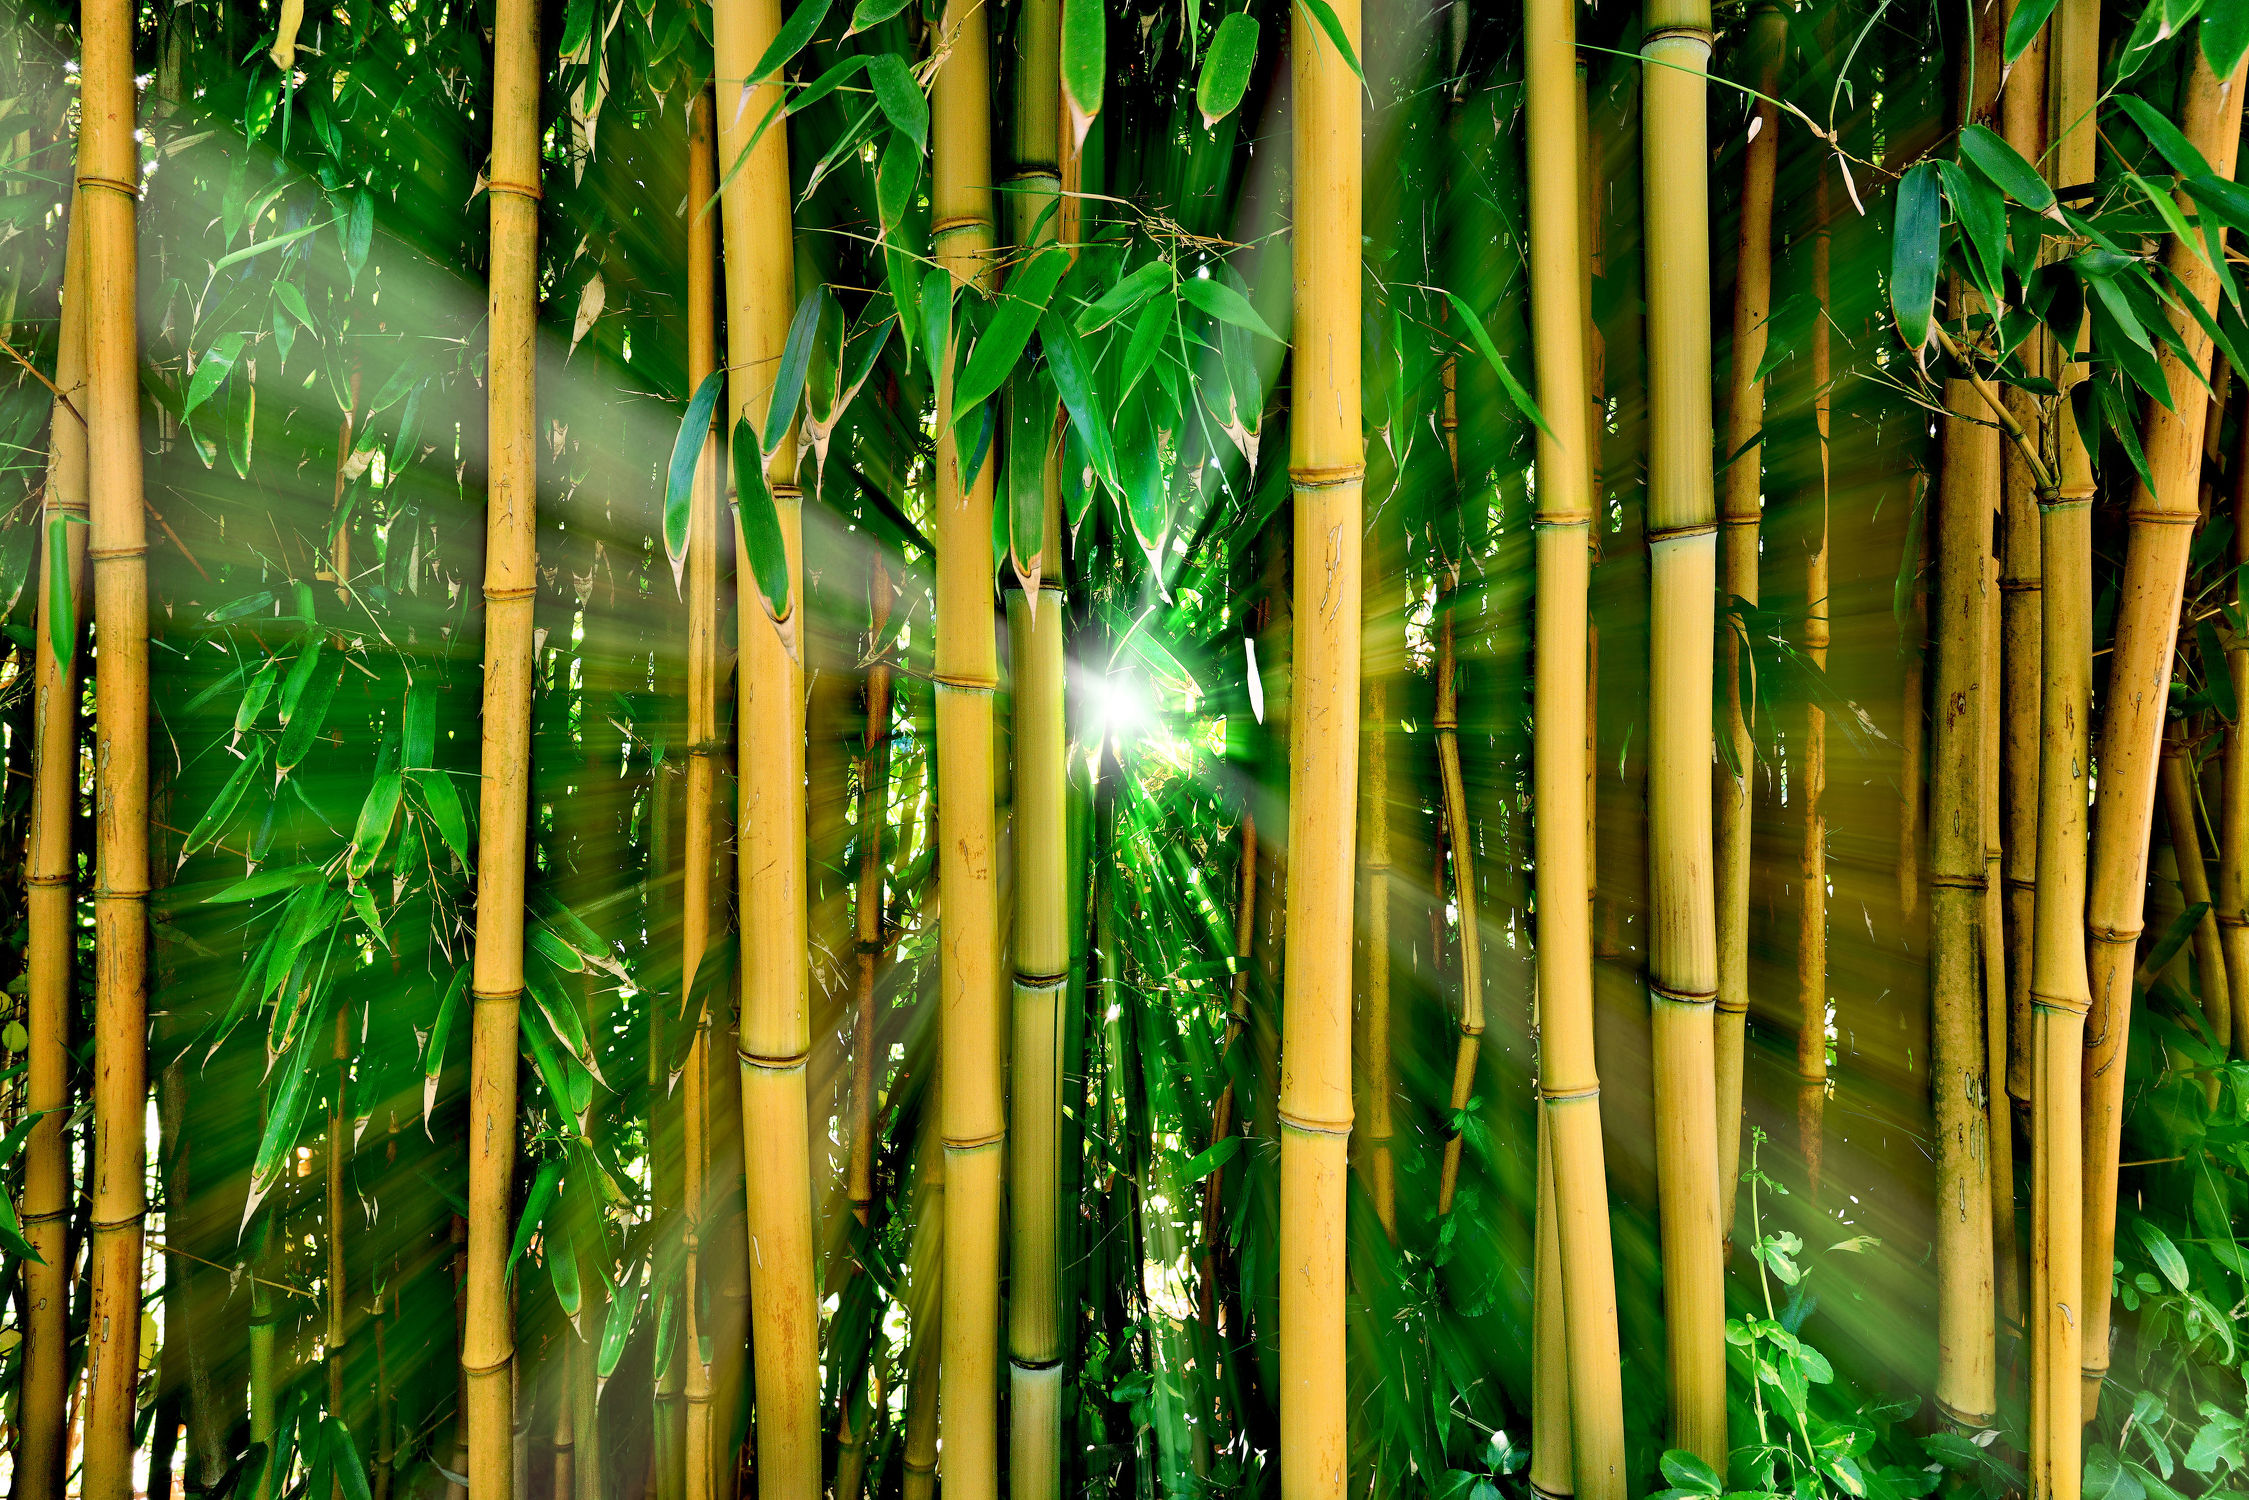 Bild mit Natur, Pflanzen, Bambus, bamboo, Wald, Gegenlicht, bambuswald, mystisch, Urwald, bambusstangen, bambusrohr, Regenwald, Bambusmotiv, bambuspflanze, Bambusblatt, Bambusblätter